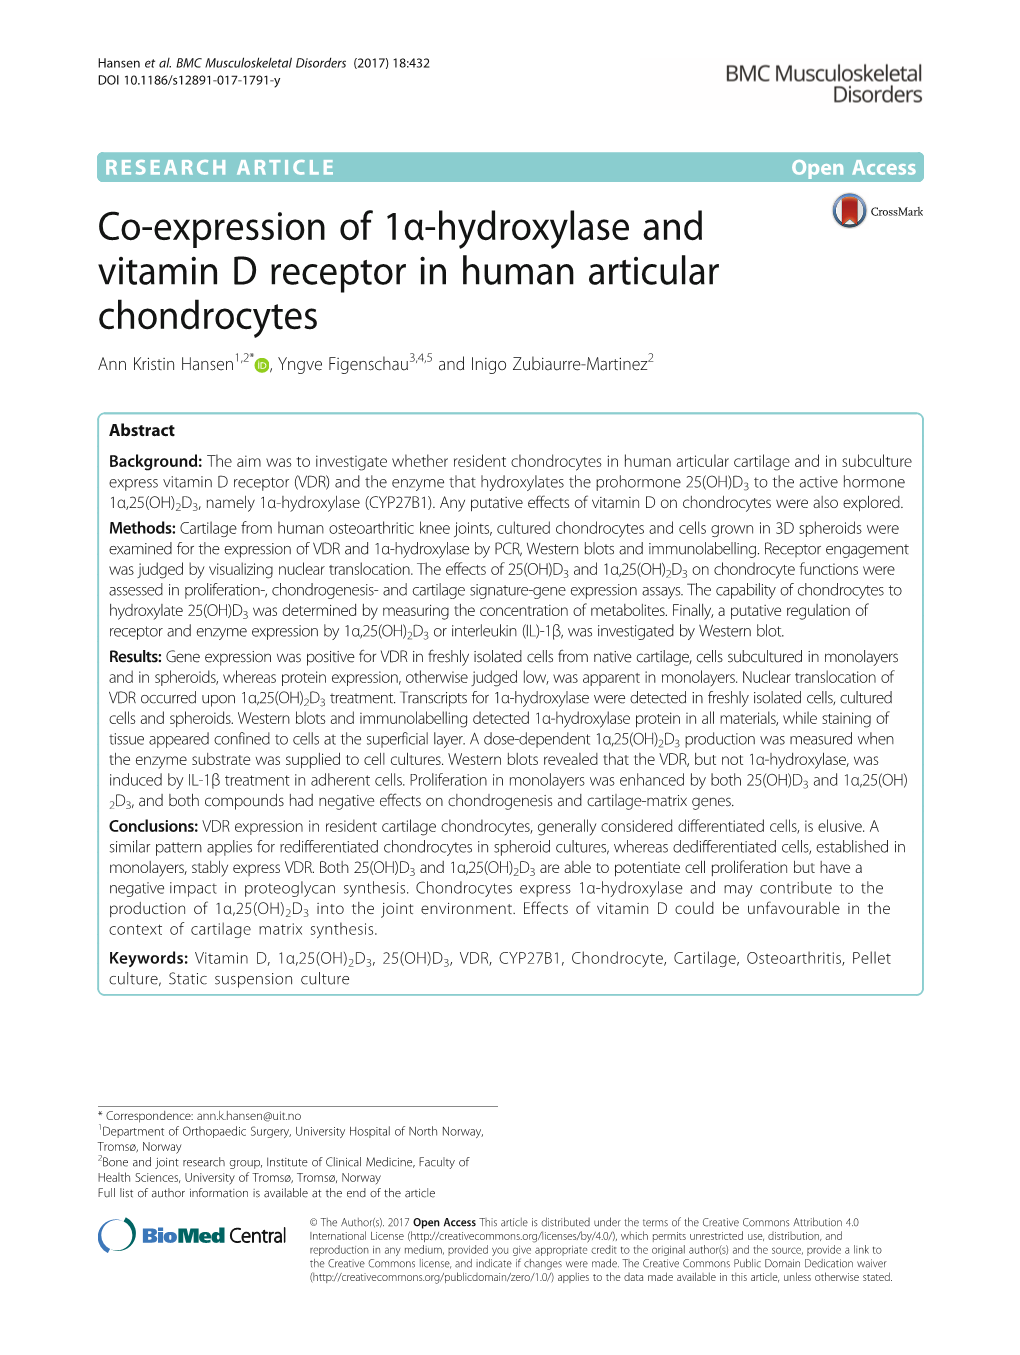 Co-Expression of 1Α-Hydroxylase and Vitamin D Receptor in Human Articular Chondrocytes Ann Kristin Hansen1,2* , Yngve Figenschau3,4,5 and Inigo Zubiaurre-Martinez2